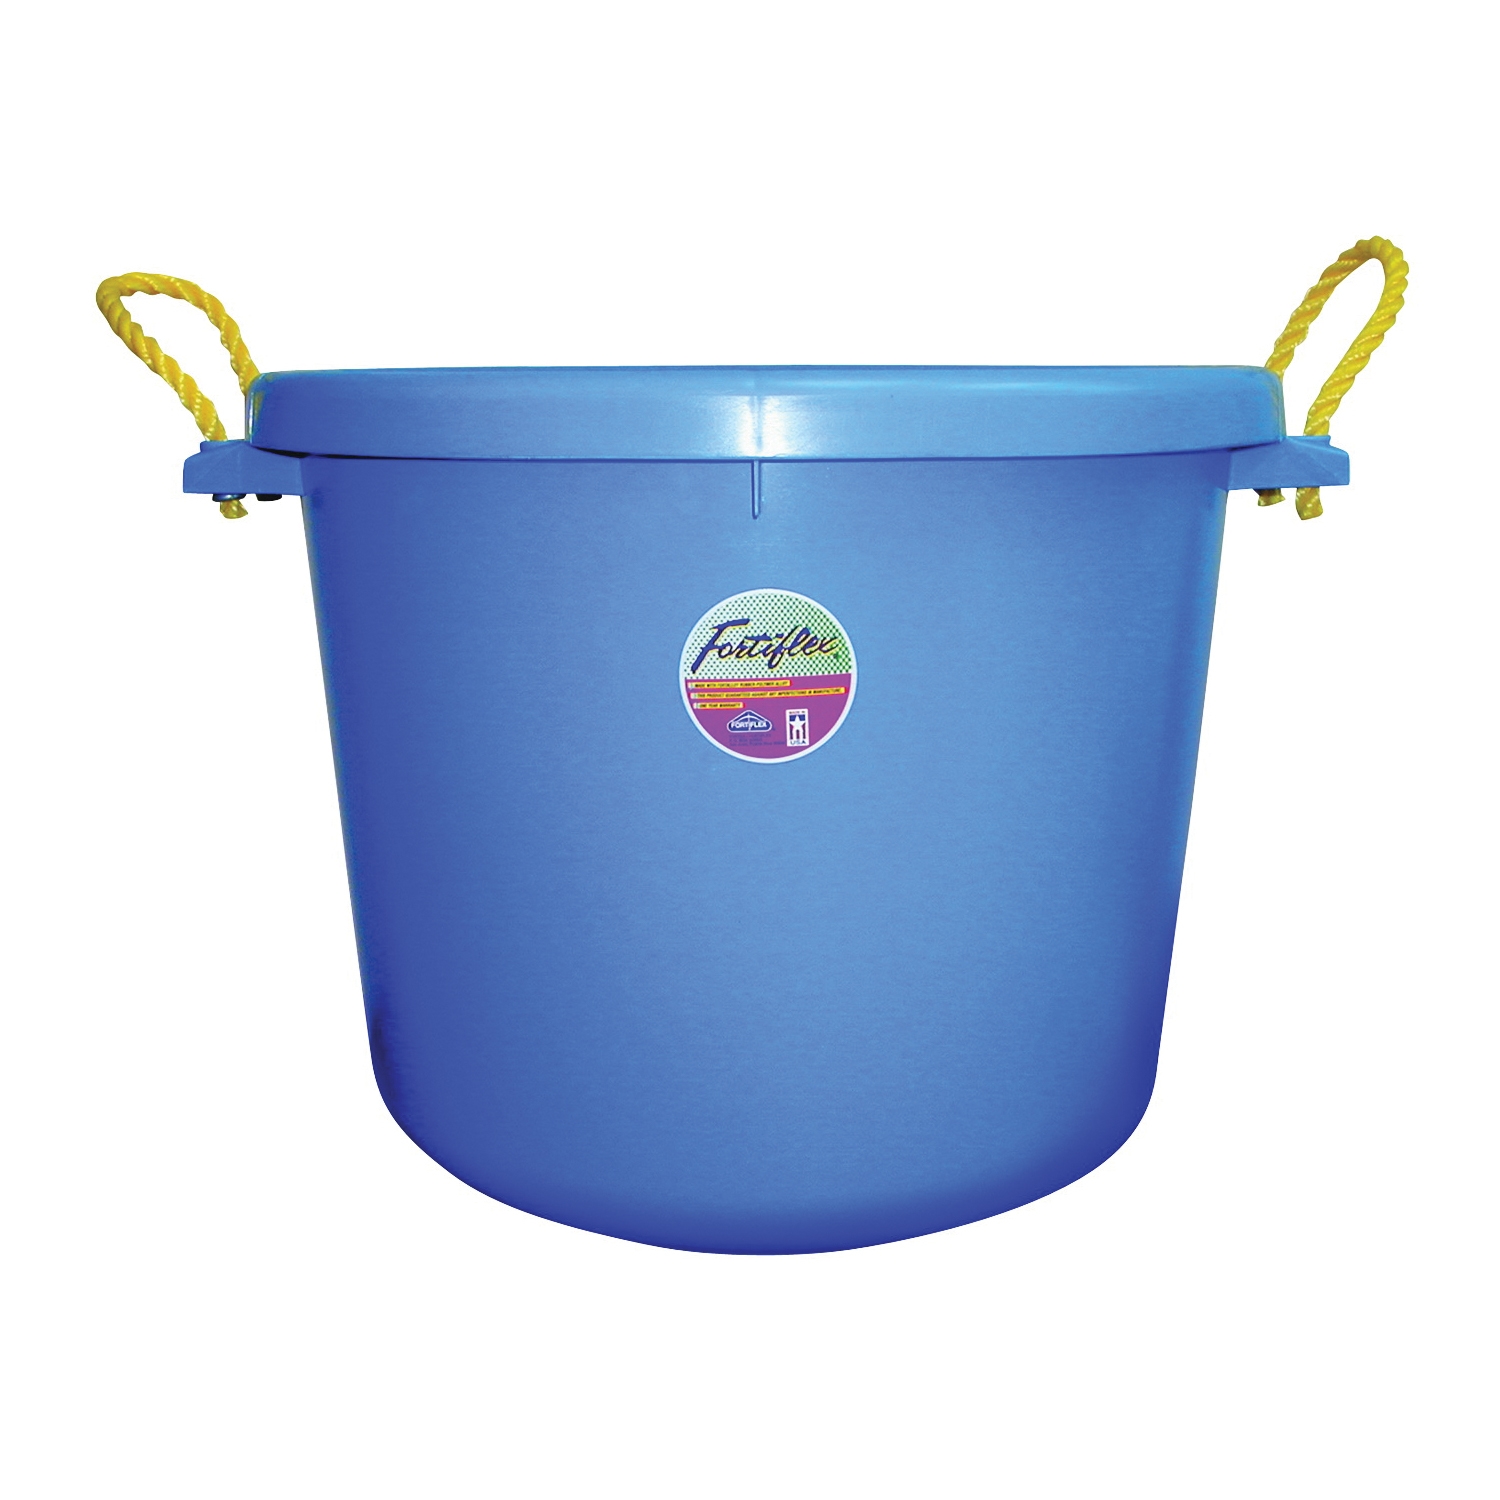 Fortex-Fortiflex MB-70BL Barn Bucket, 70 qt Volume, Polyethylene/Rubber, Blue